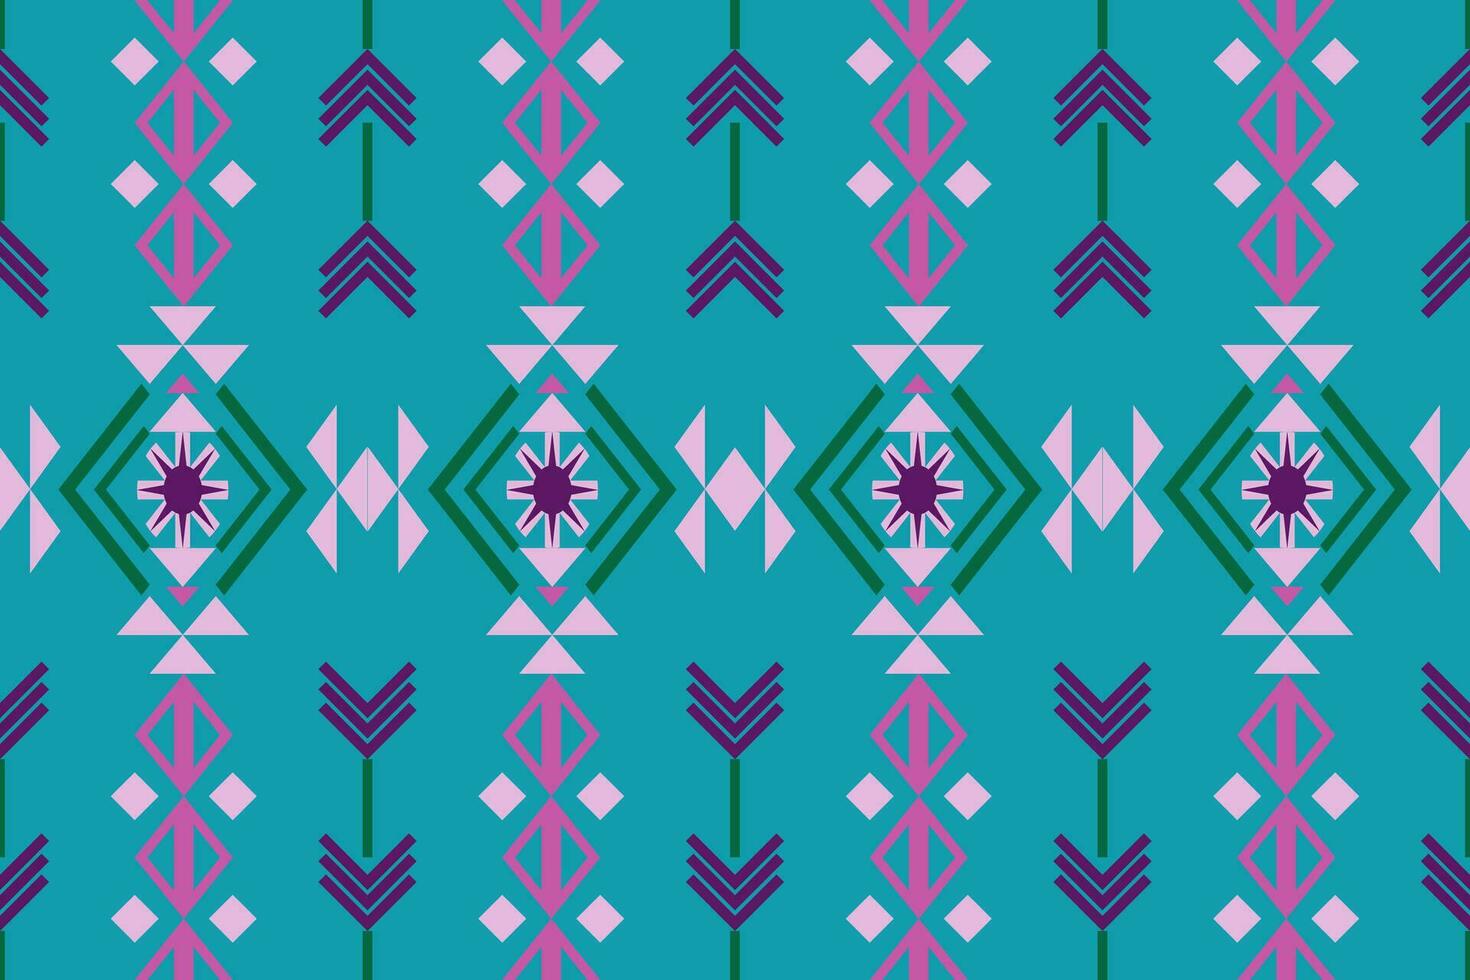 damasco stile modello per tessile e decorazione.senza soluzione di continuità modello nel tribal.nativo azteco boho vettore design.sfondo toppa modello con tradizionale stile, design per decorazione e tessile